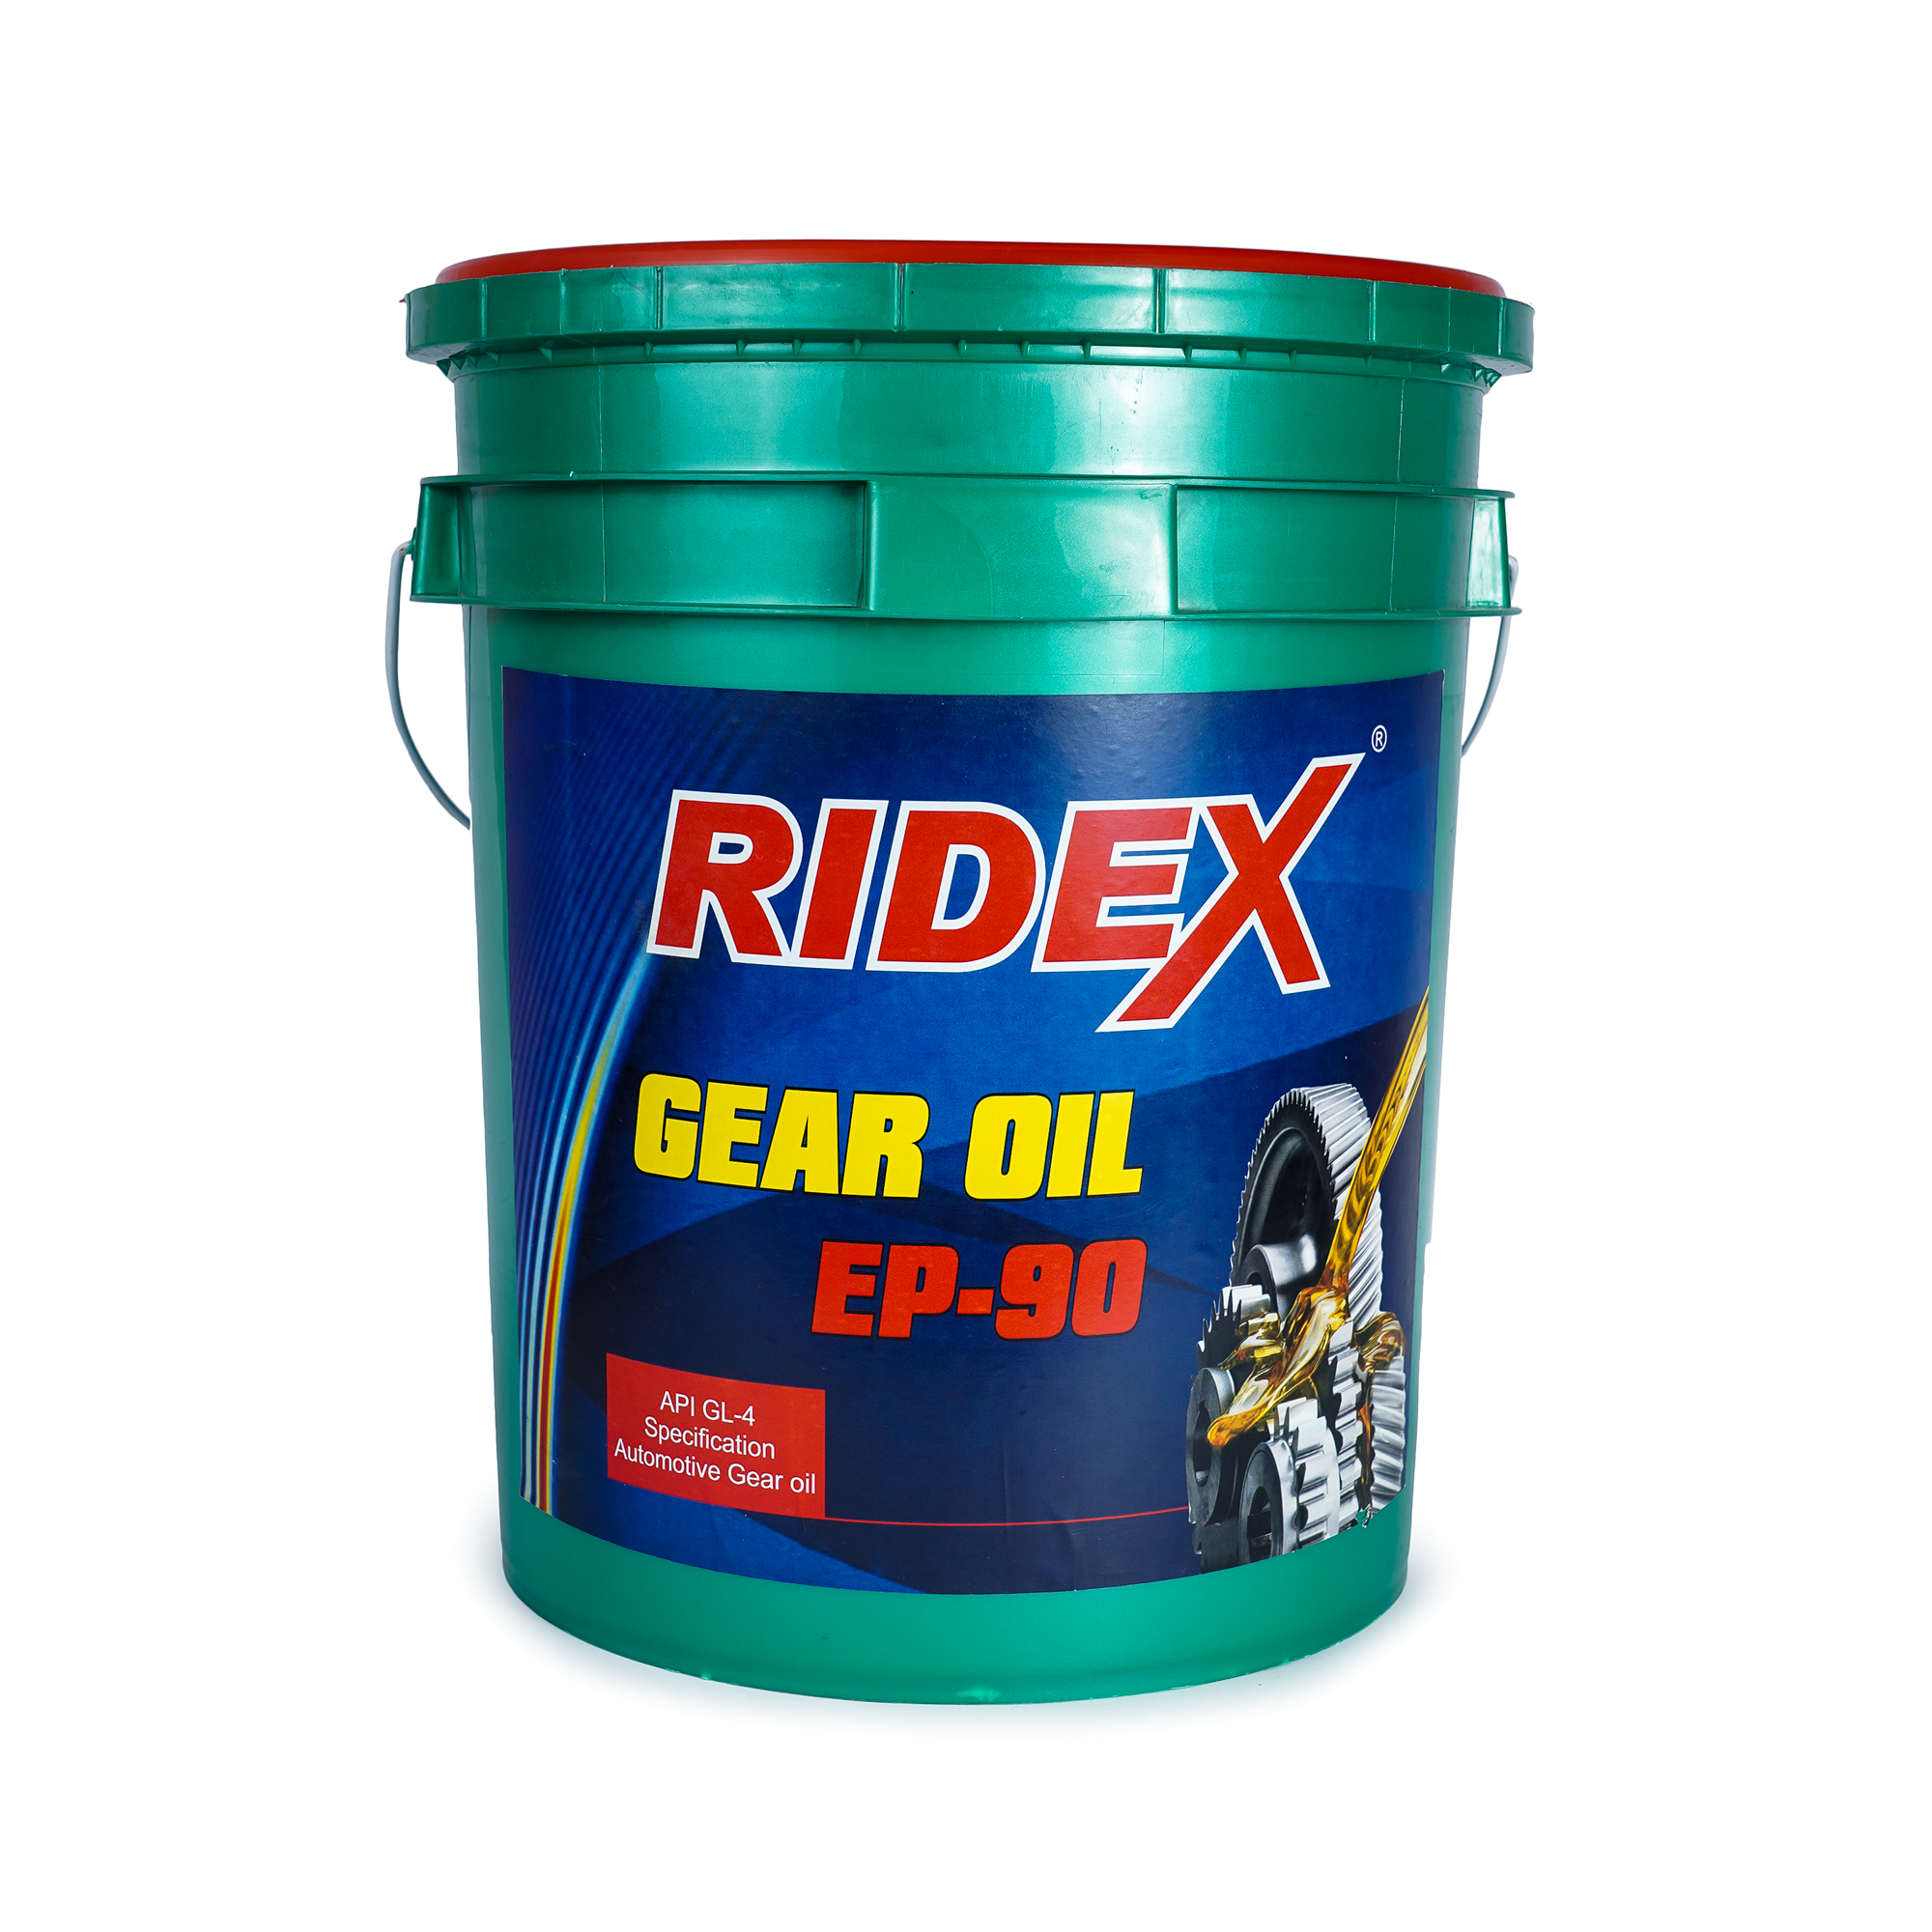 RIDEX  TURBO SUPER GEAR DRIVE(GEAR OIL) EP-90 20 LTR